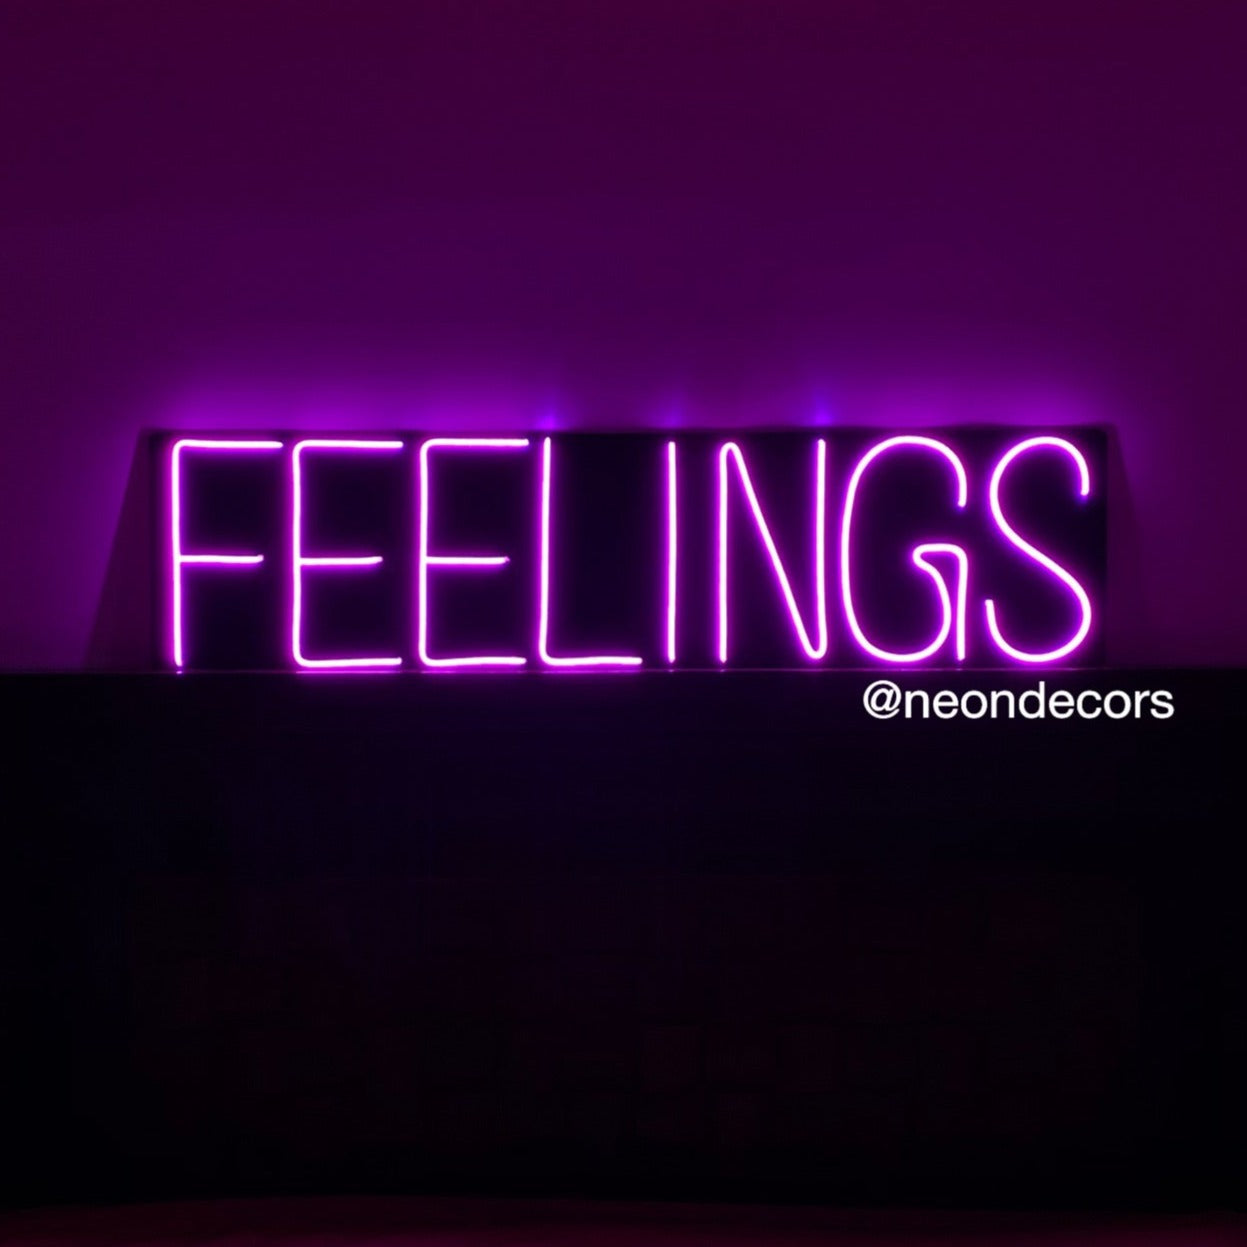 Feelings neon sign